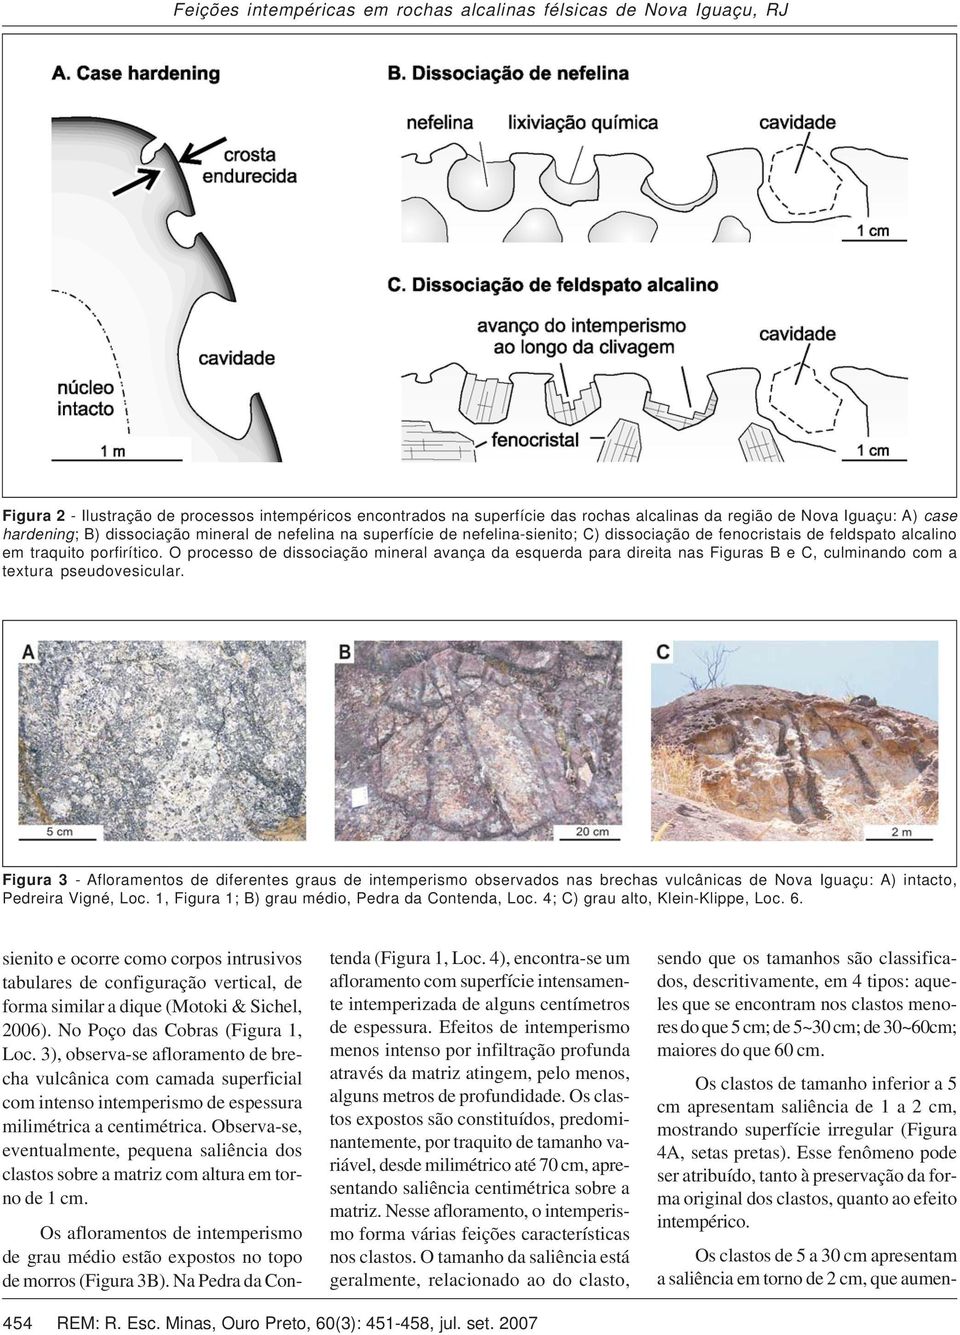 O processo de dissociação mineral avança da esquerda para direita nas Figuras B e C, culminando com a textura pseudovesicular.